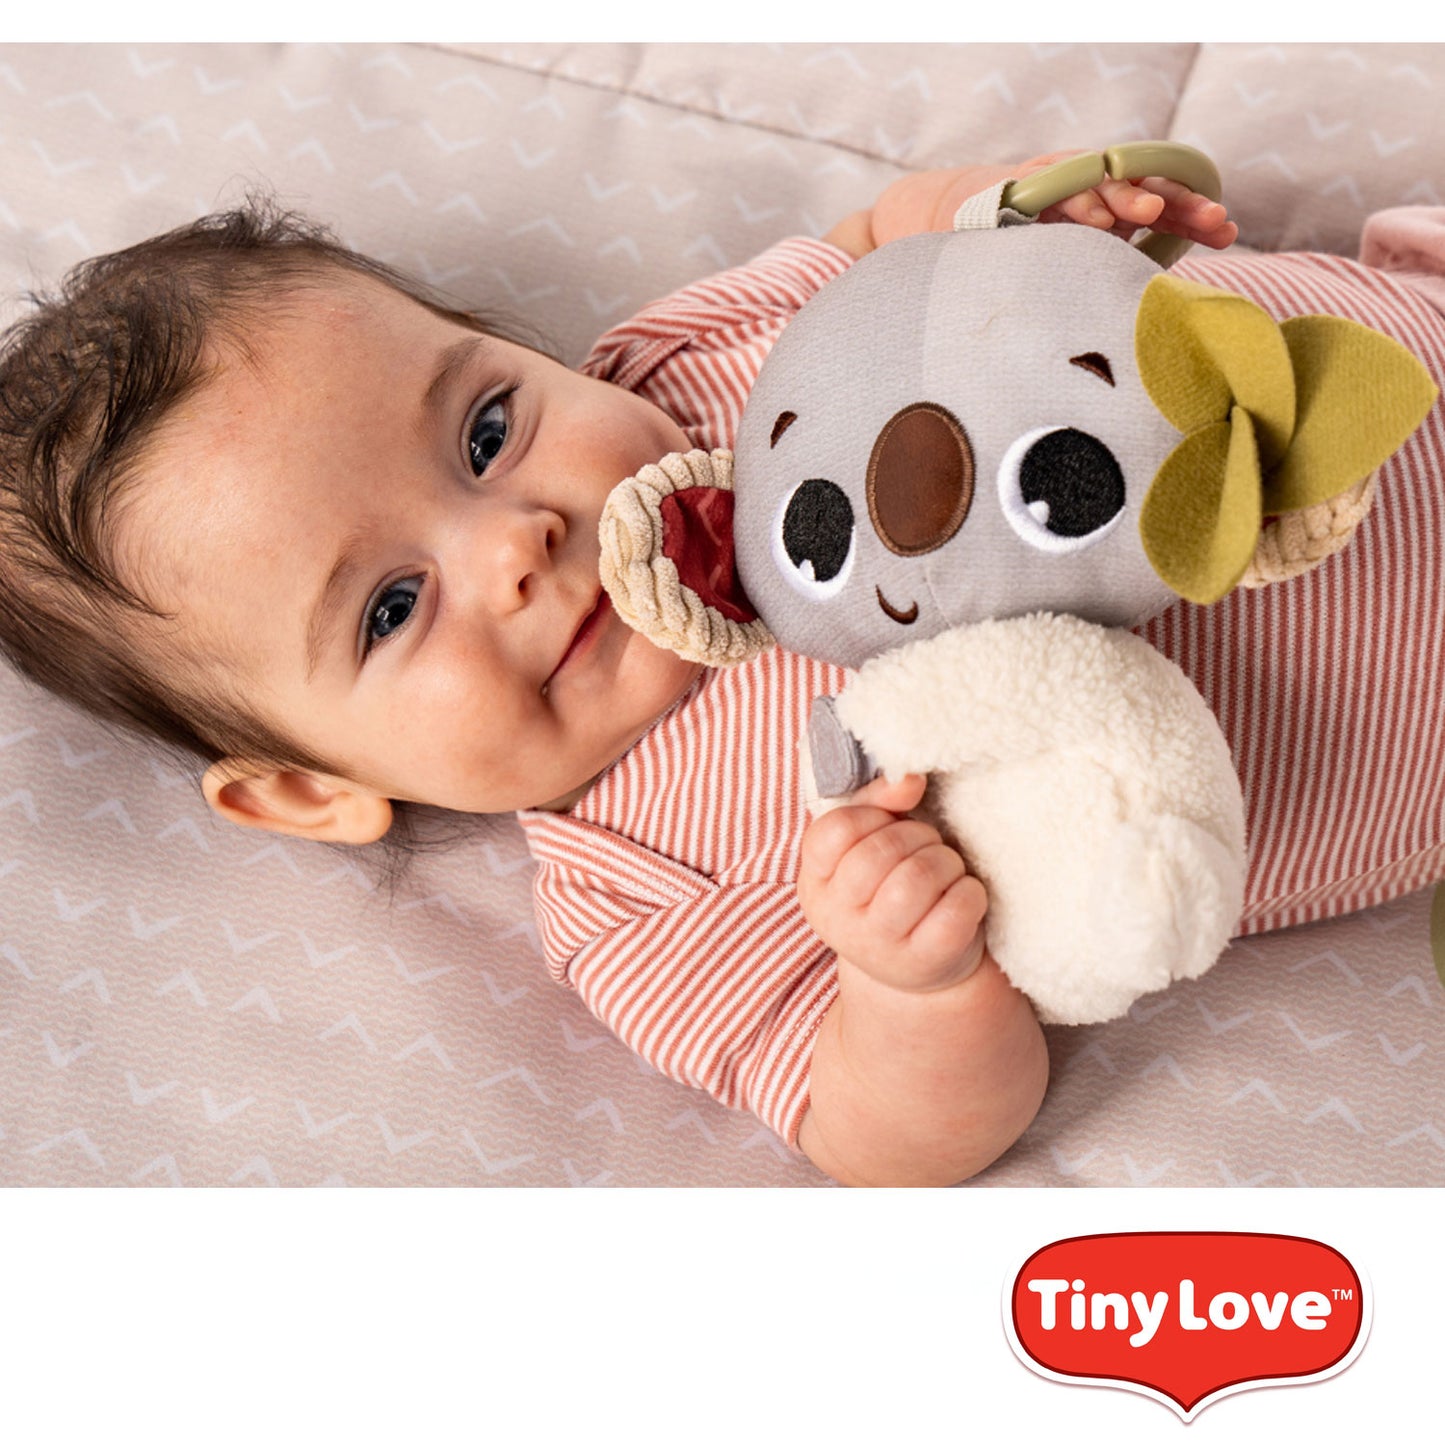 Tiny Love - Boho Chic Koala Rattle